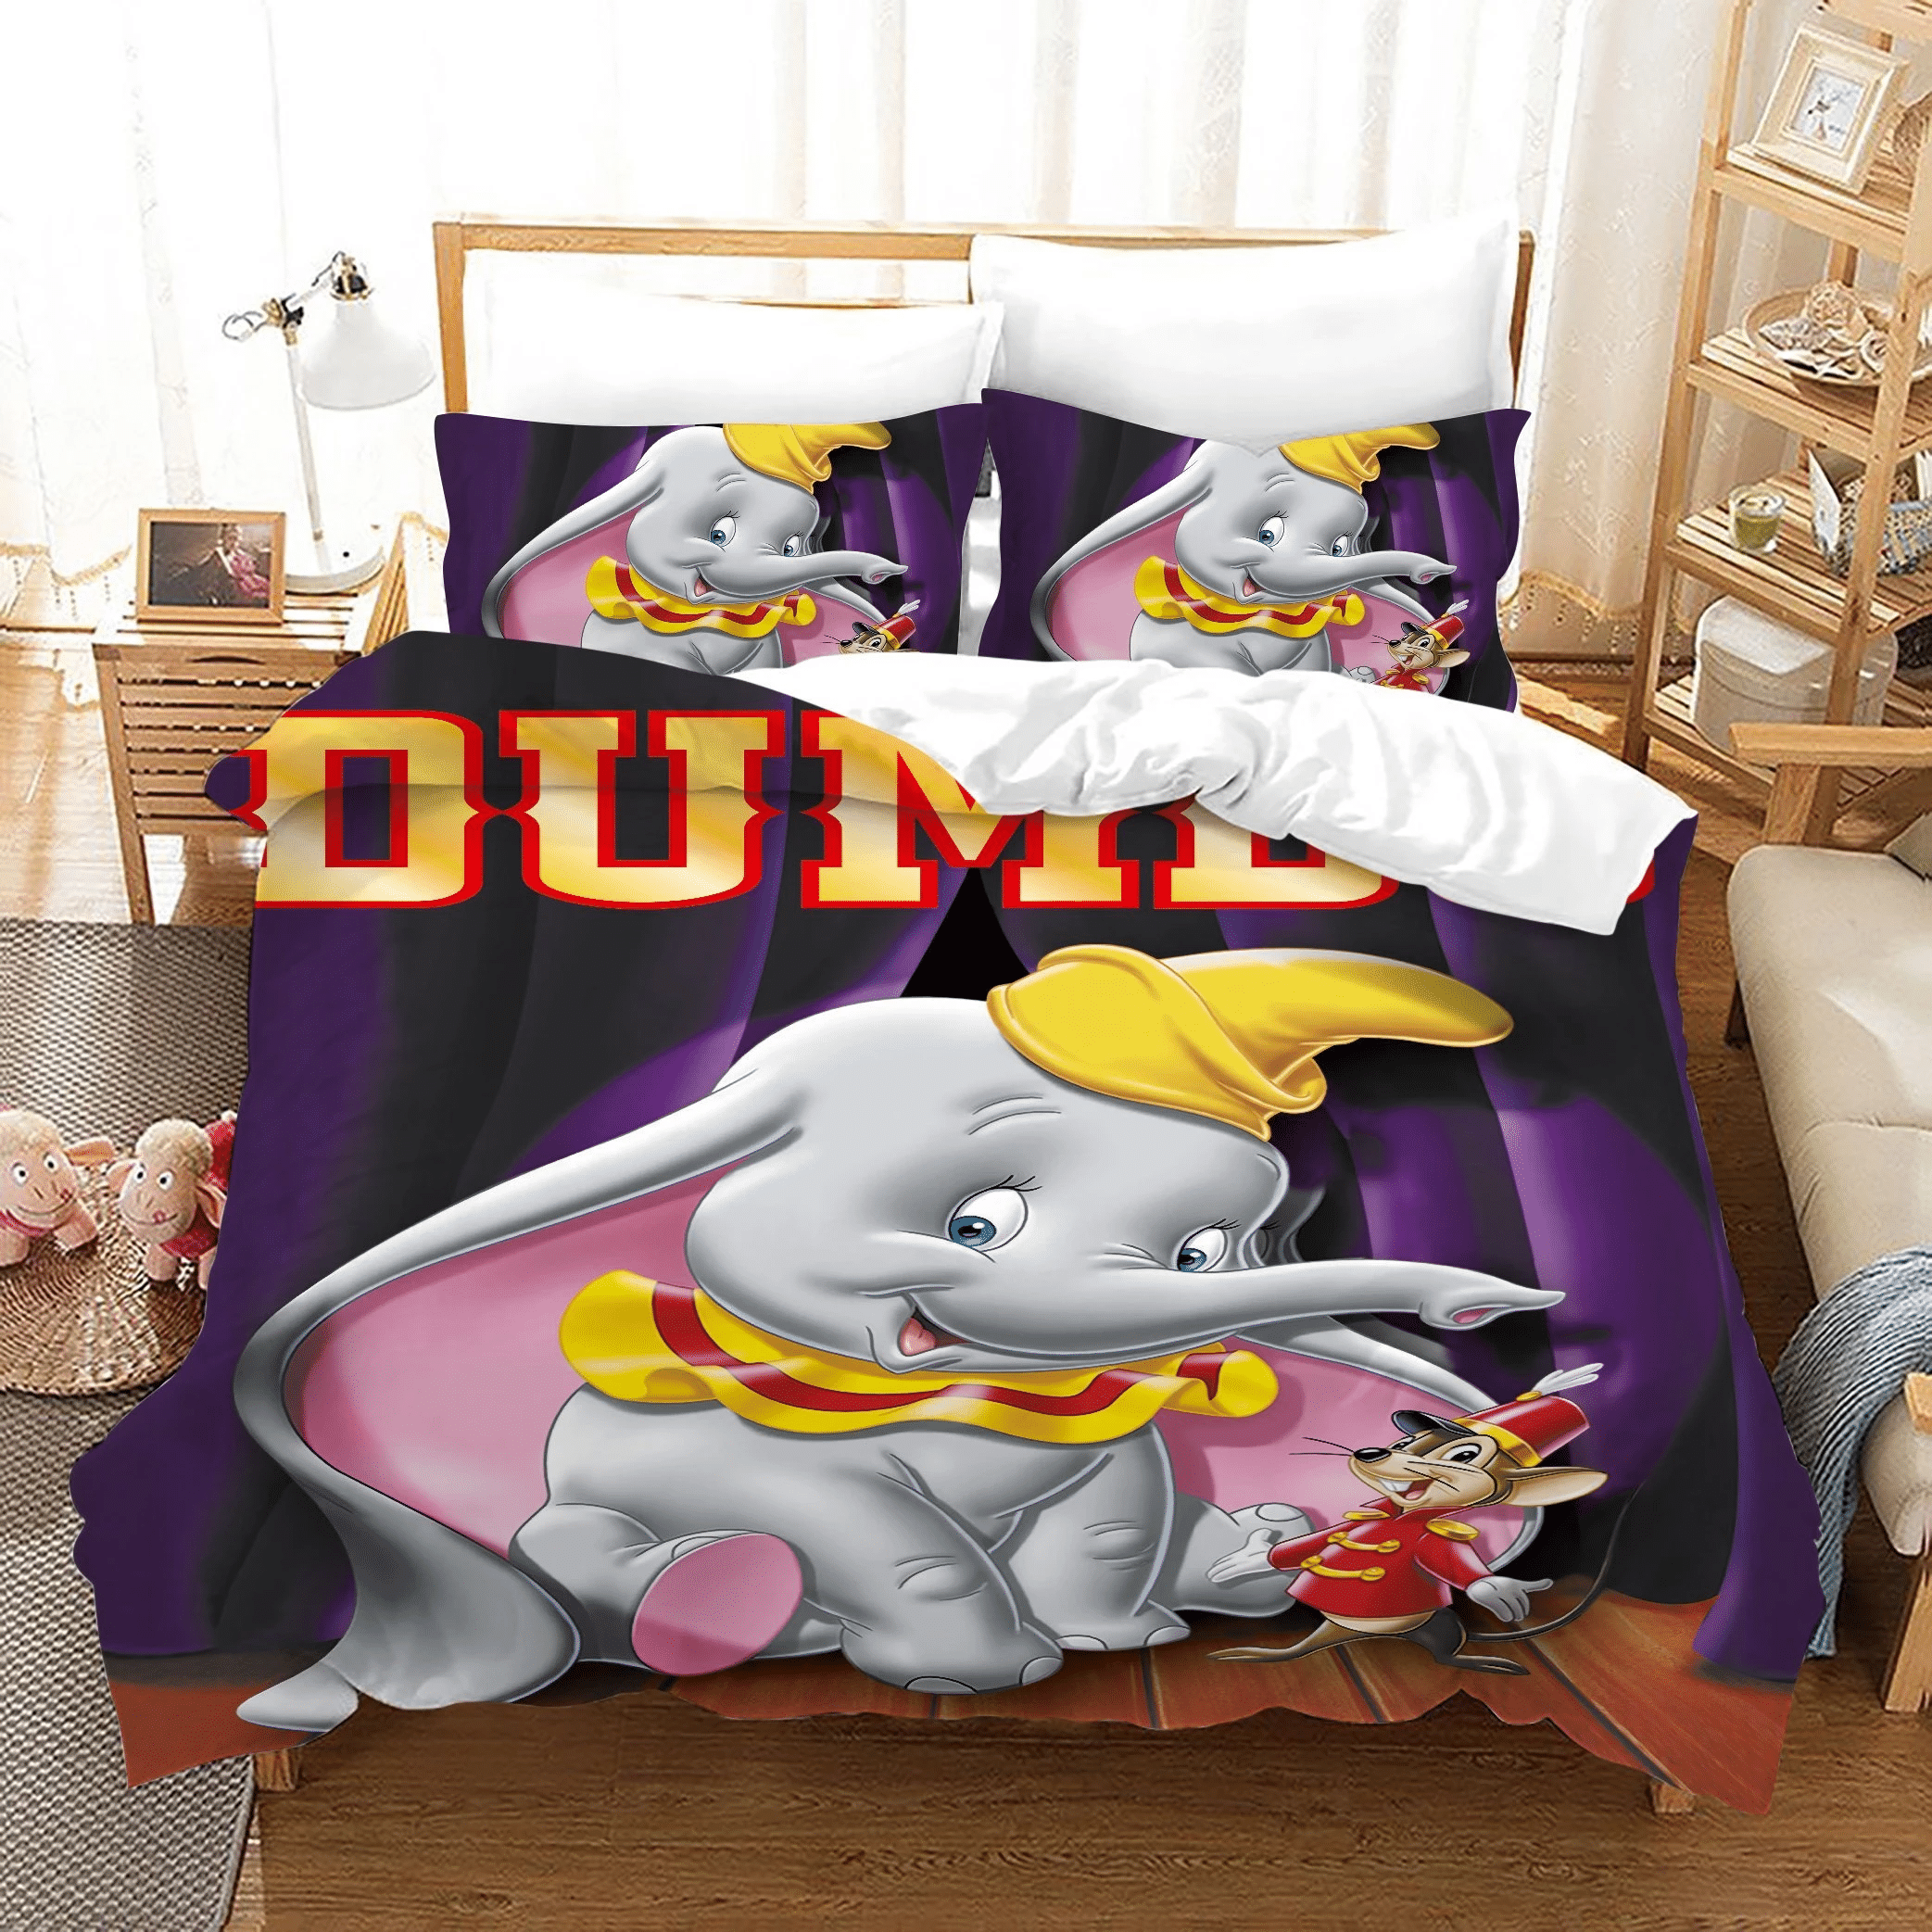 Dumbo 3 Duvet Cover Pillowcase Bedding Sets Home Bedroom Decor